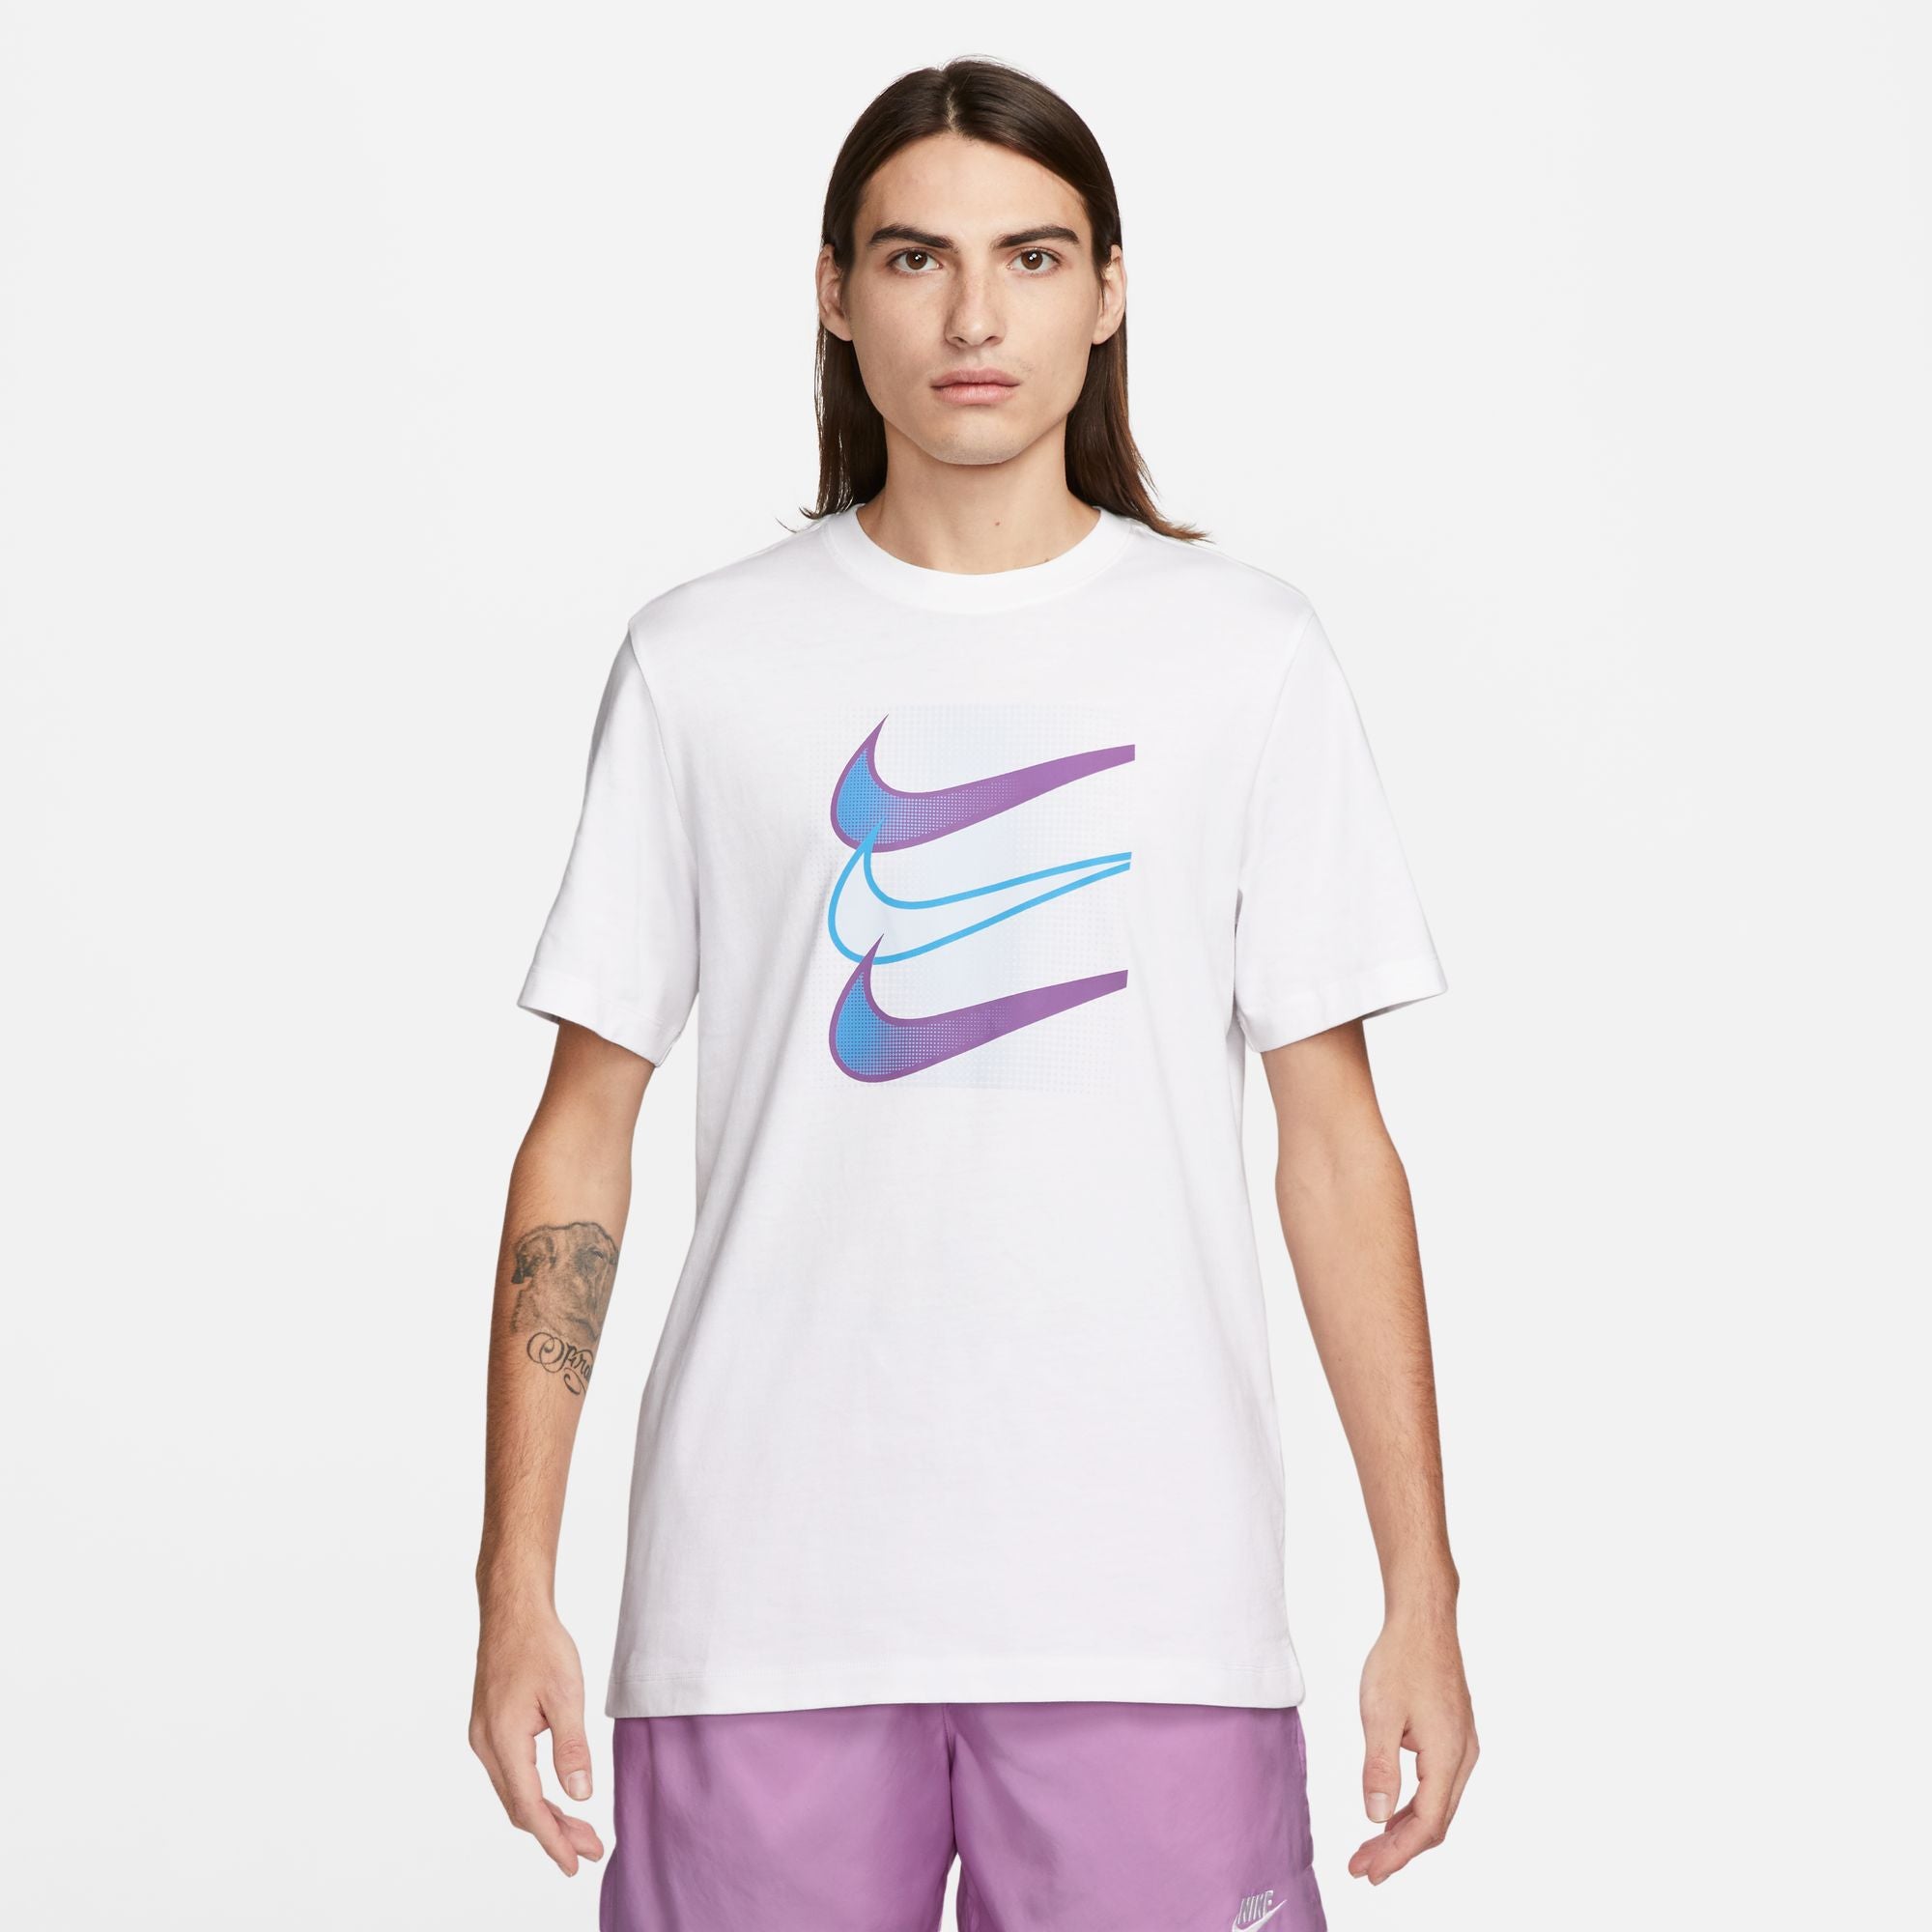 Camiseta Nike Sportswear - Blanc/Bleu/Rose